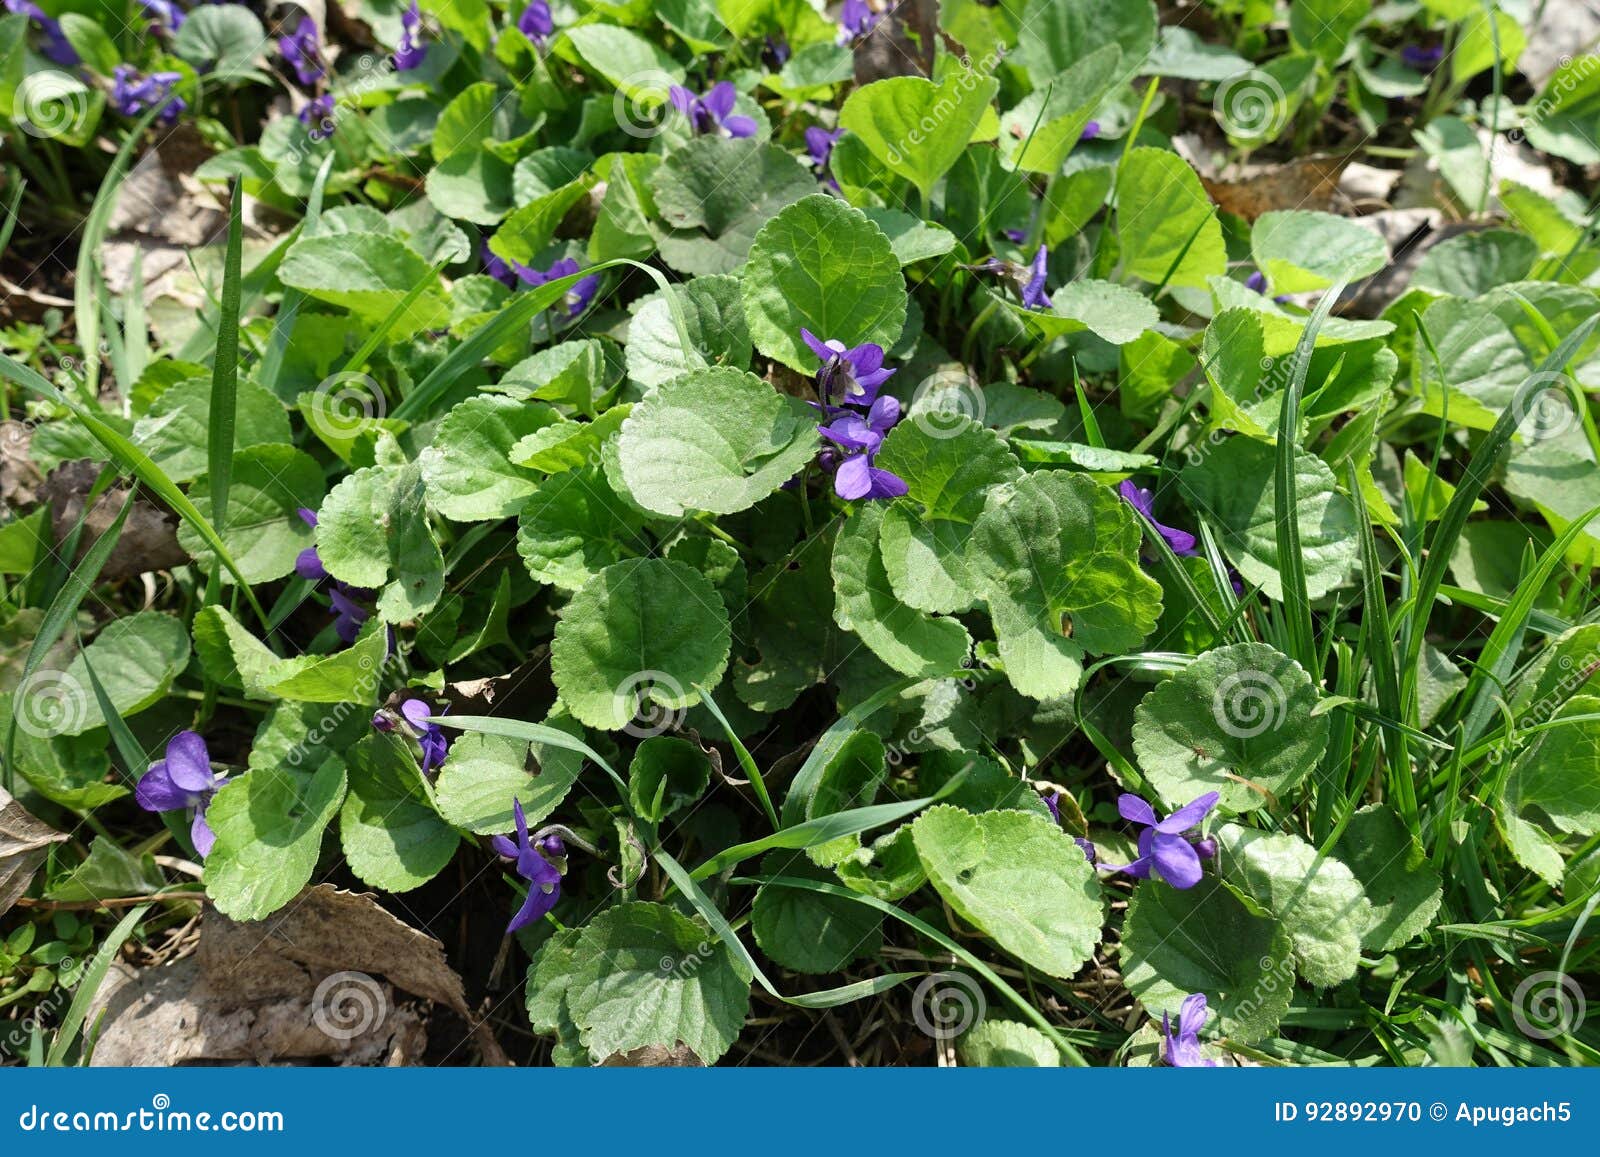 Petites Fleurs Violettes De Violette De Chien Dans L'herbe Photo stock -  Image du centrale, saison: 92892970